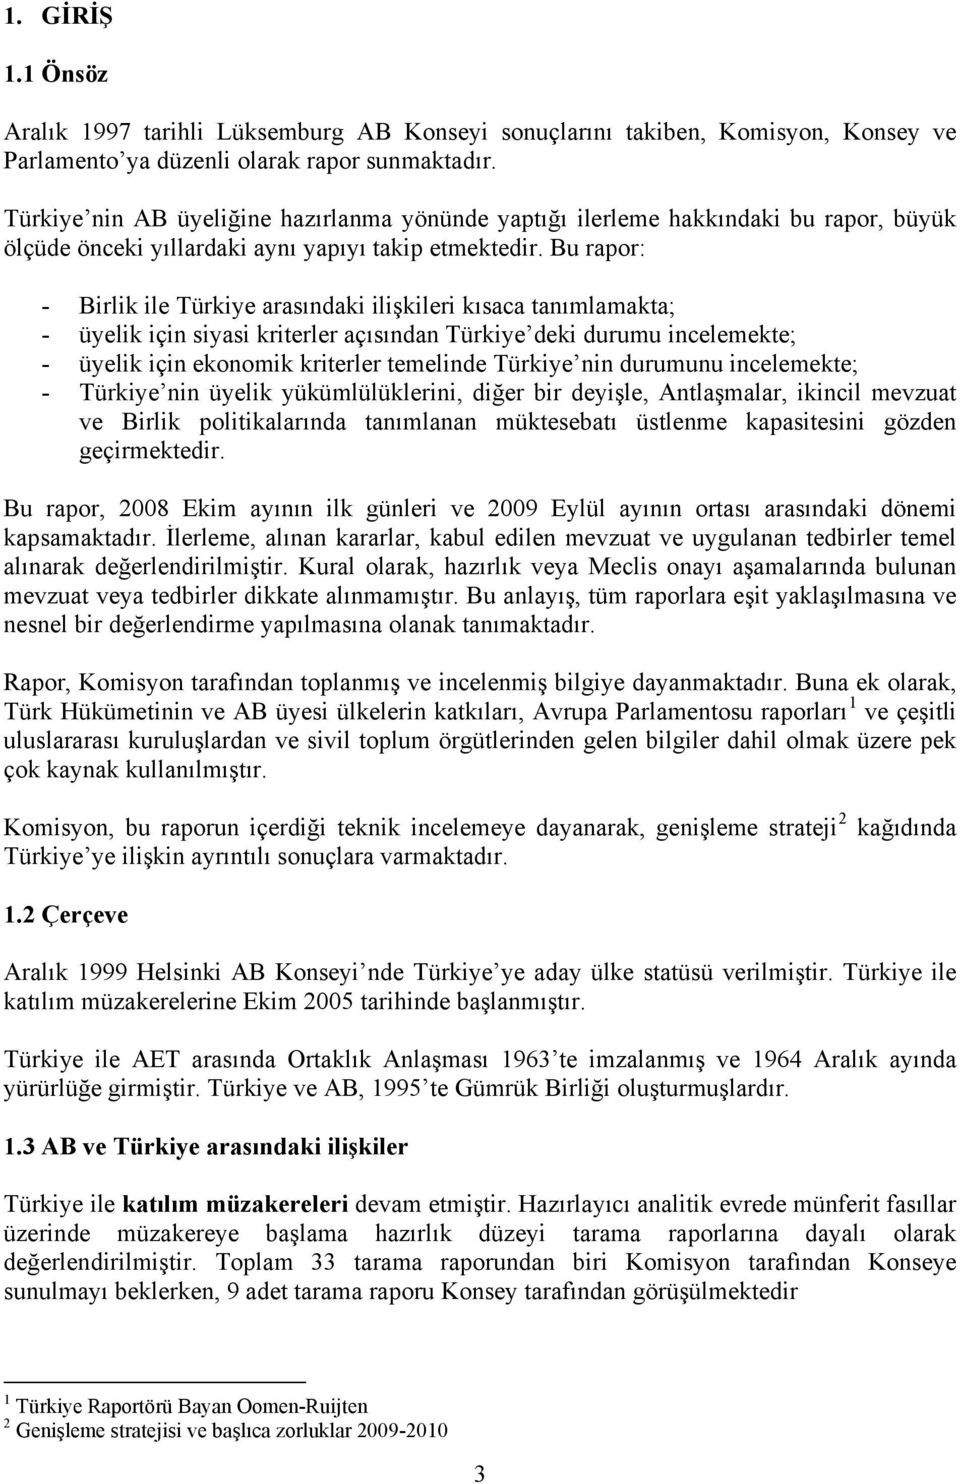 Bu rapor: - Birlik ile Türkiye arasındaki ilişkileri kısaca tanımlamakta; - üyelik için siyasi kriterler açısından Türkiye deki durumu incelemekte; - üyelik için ekonomik kriterler temelinde Türkiye